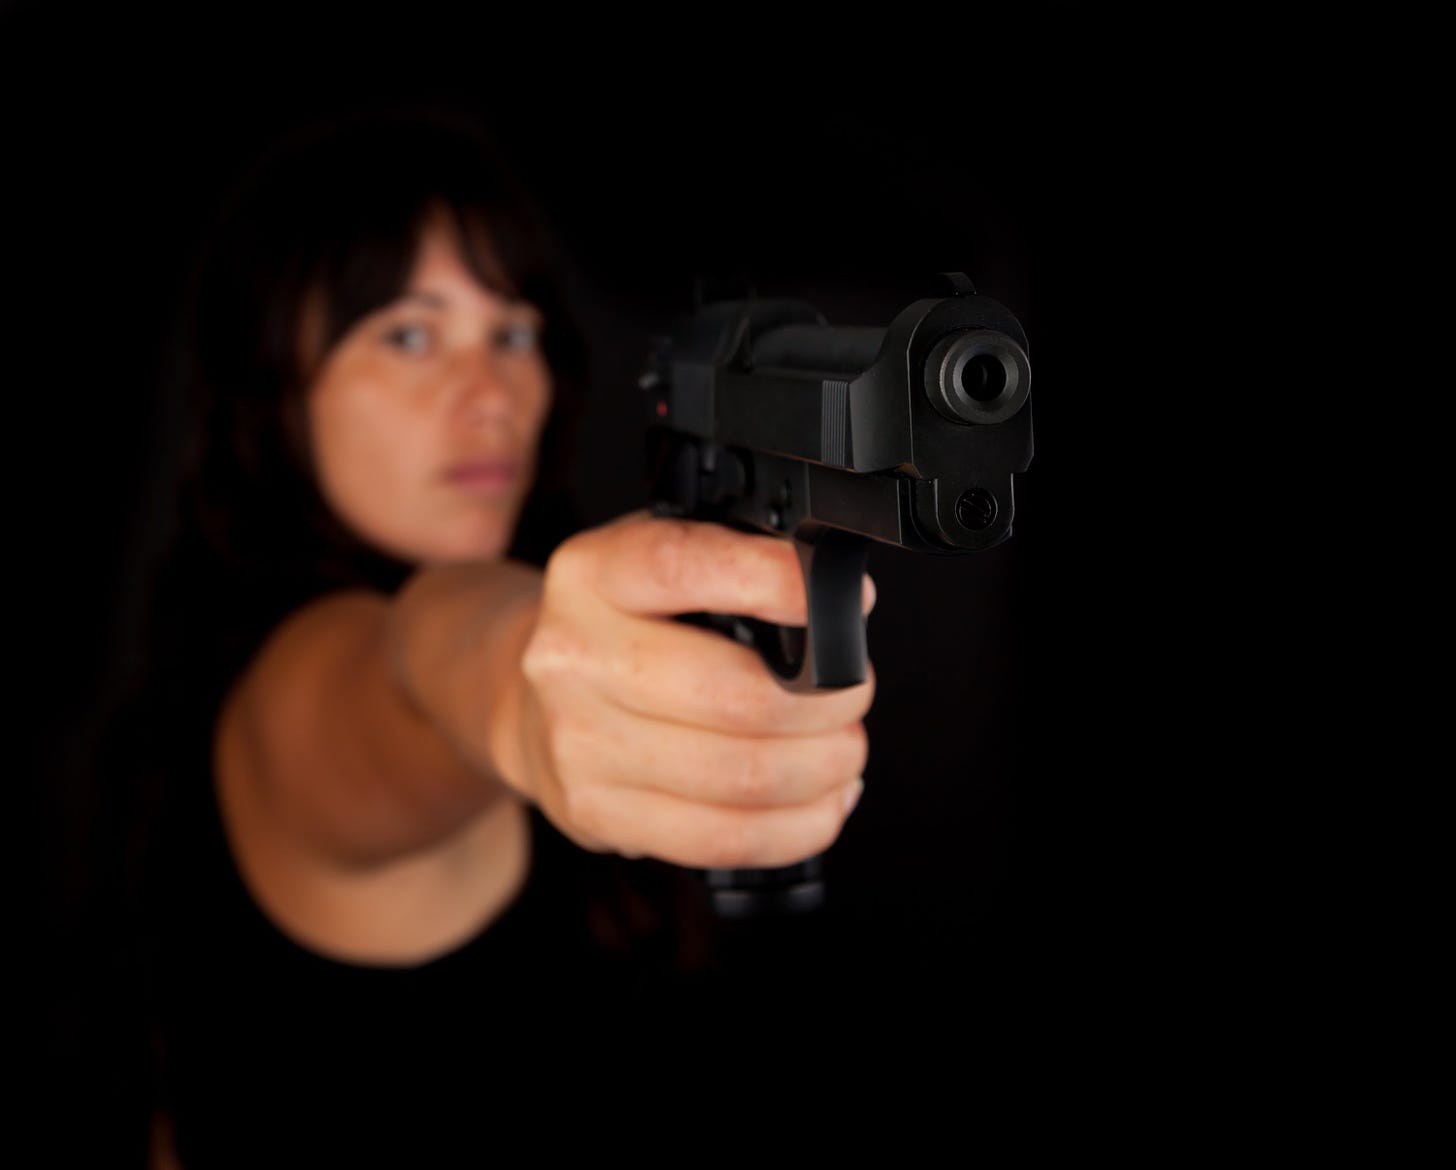 women-with-guns-avoid-assault-an